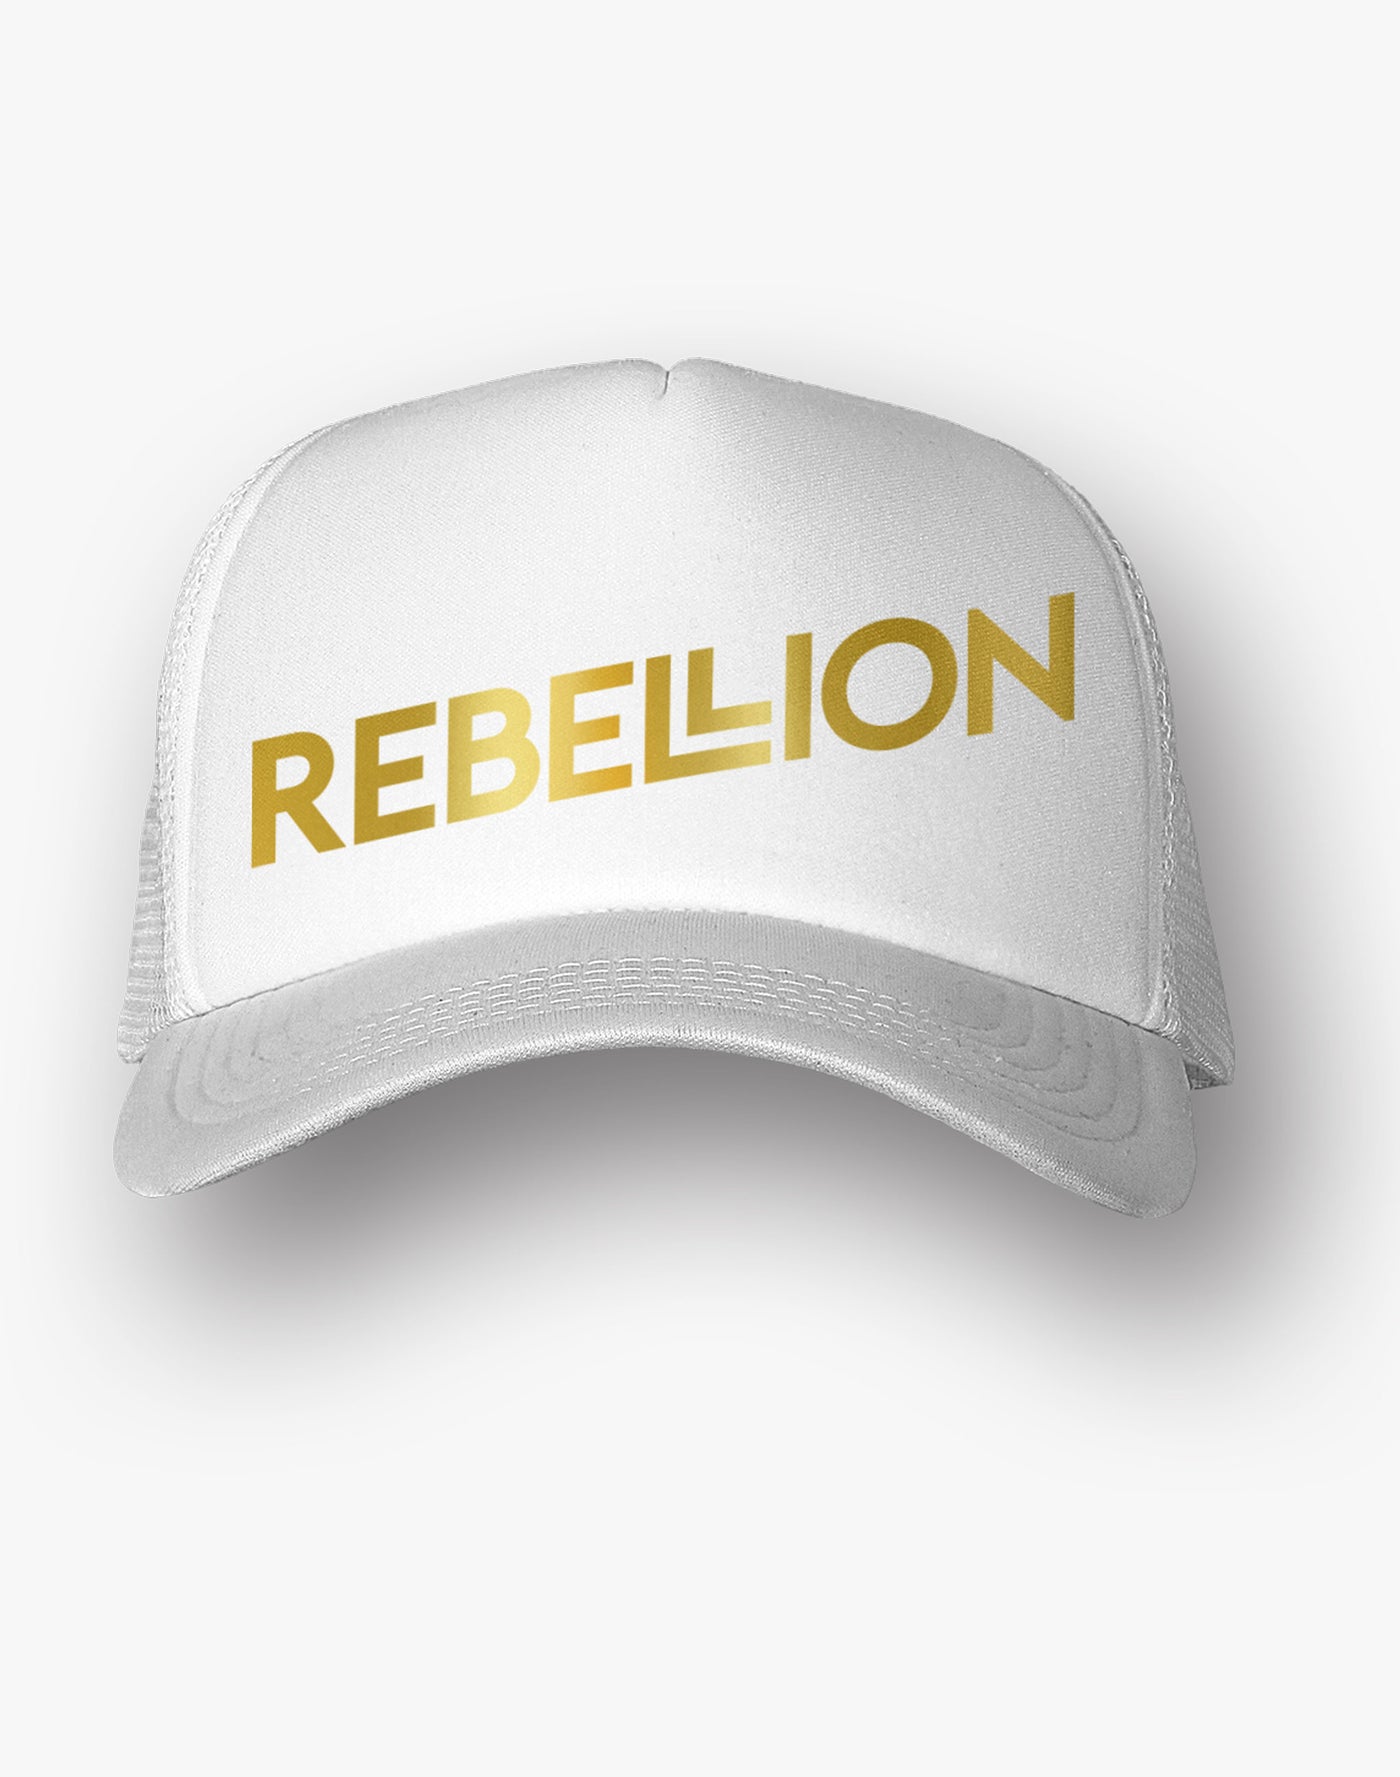 Rebellion Gold Foil White Trucker Hat